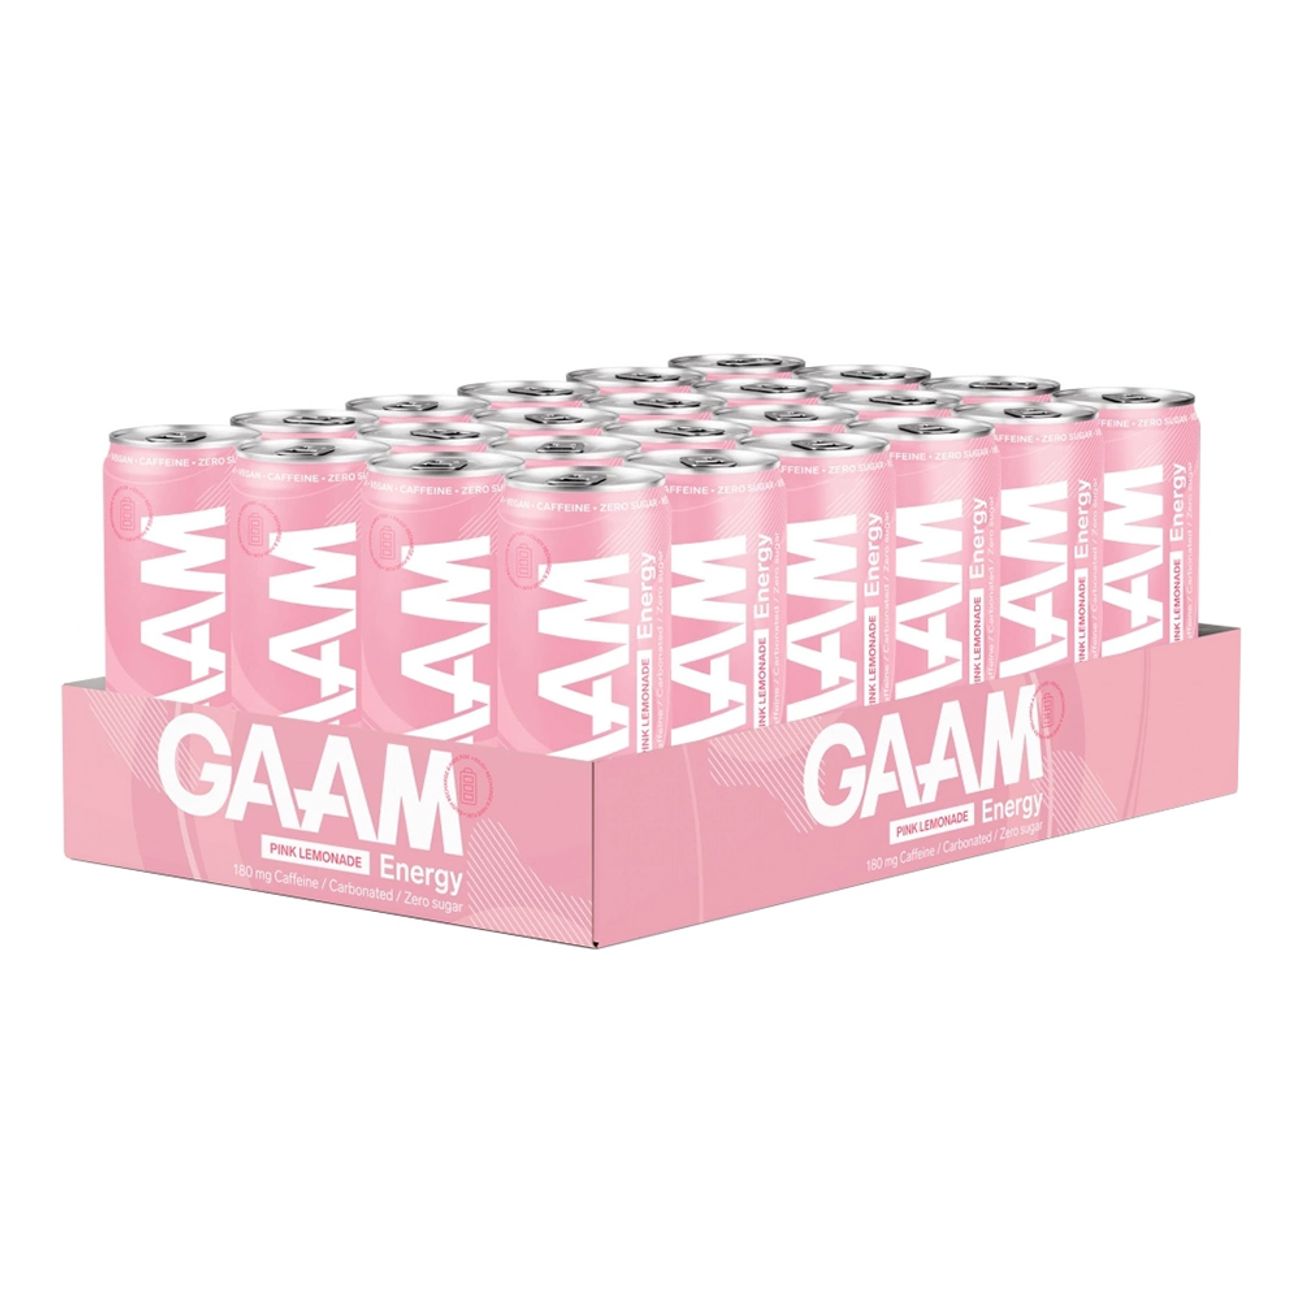 gaam-energy-pink-lemonade-79902-2